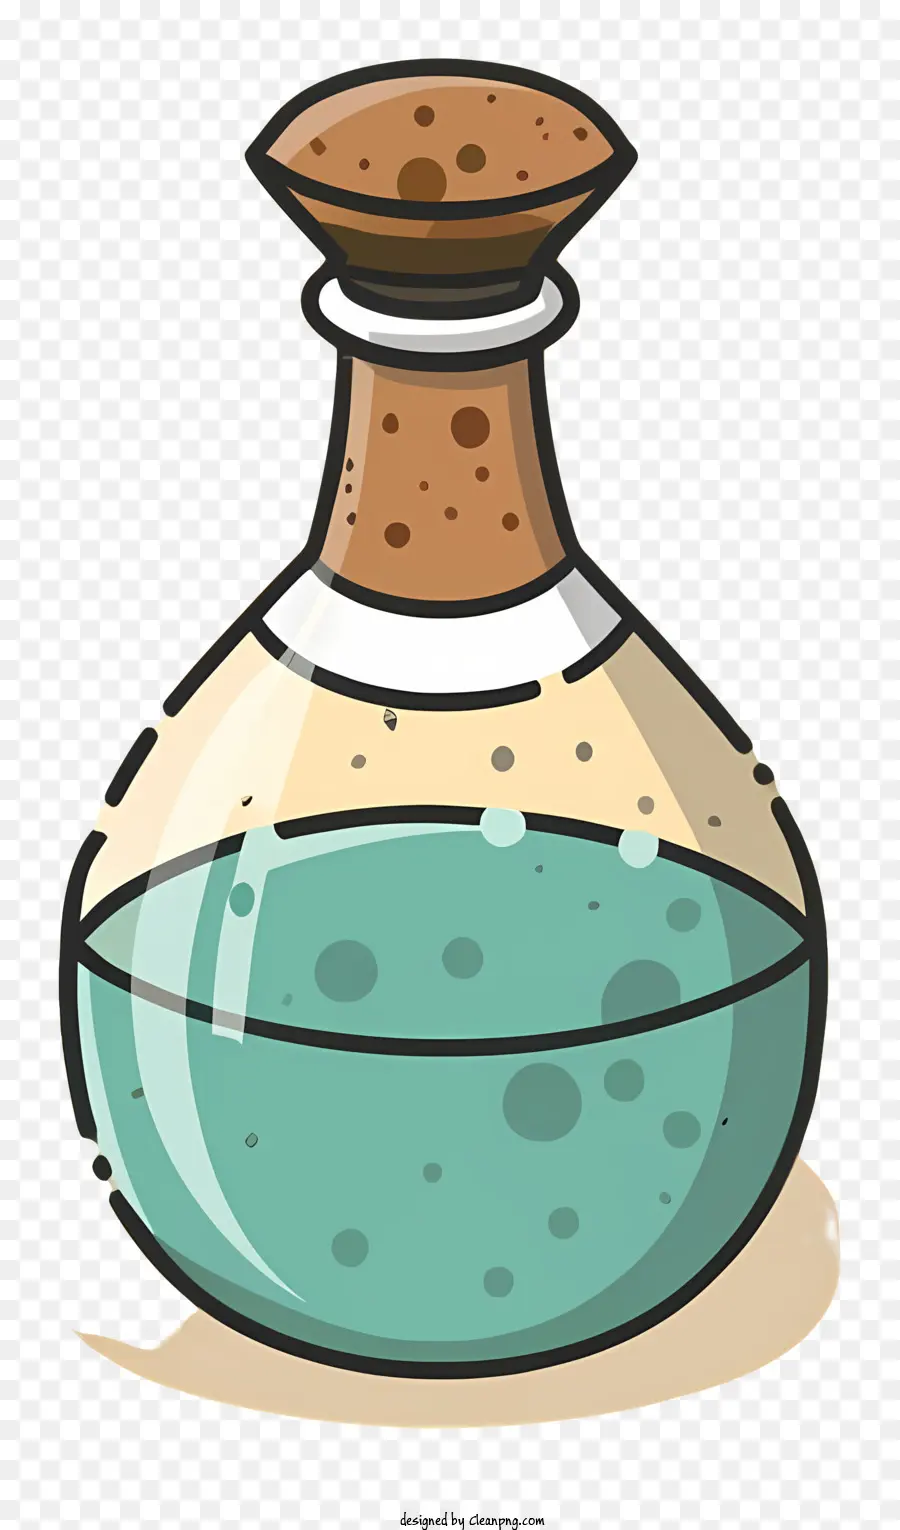 chai thủy tinh màu xanh chất lỏng trong suốt chai nút chai nút nhỏ một lượng nhỏ chất lỏng - Chất lỏng màu xanh trong chai thủy tinh trên nền đen